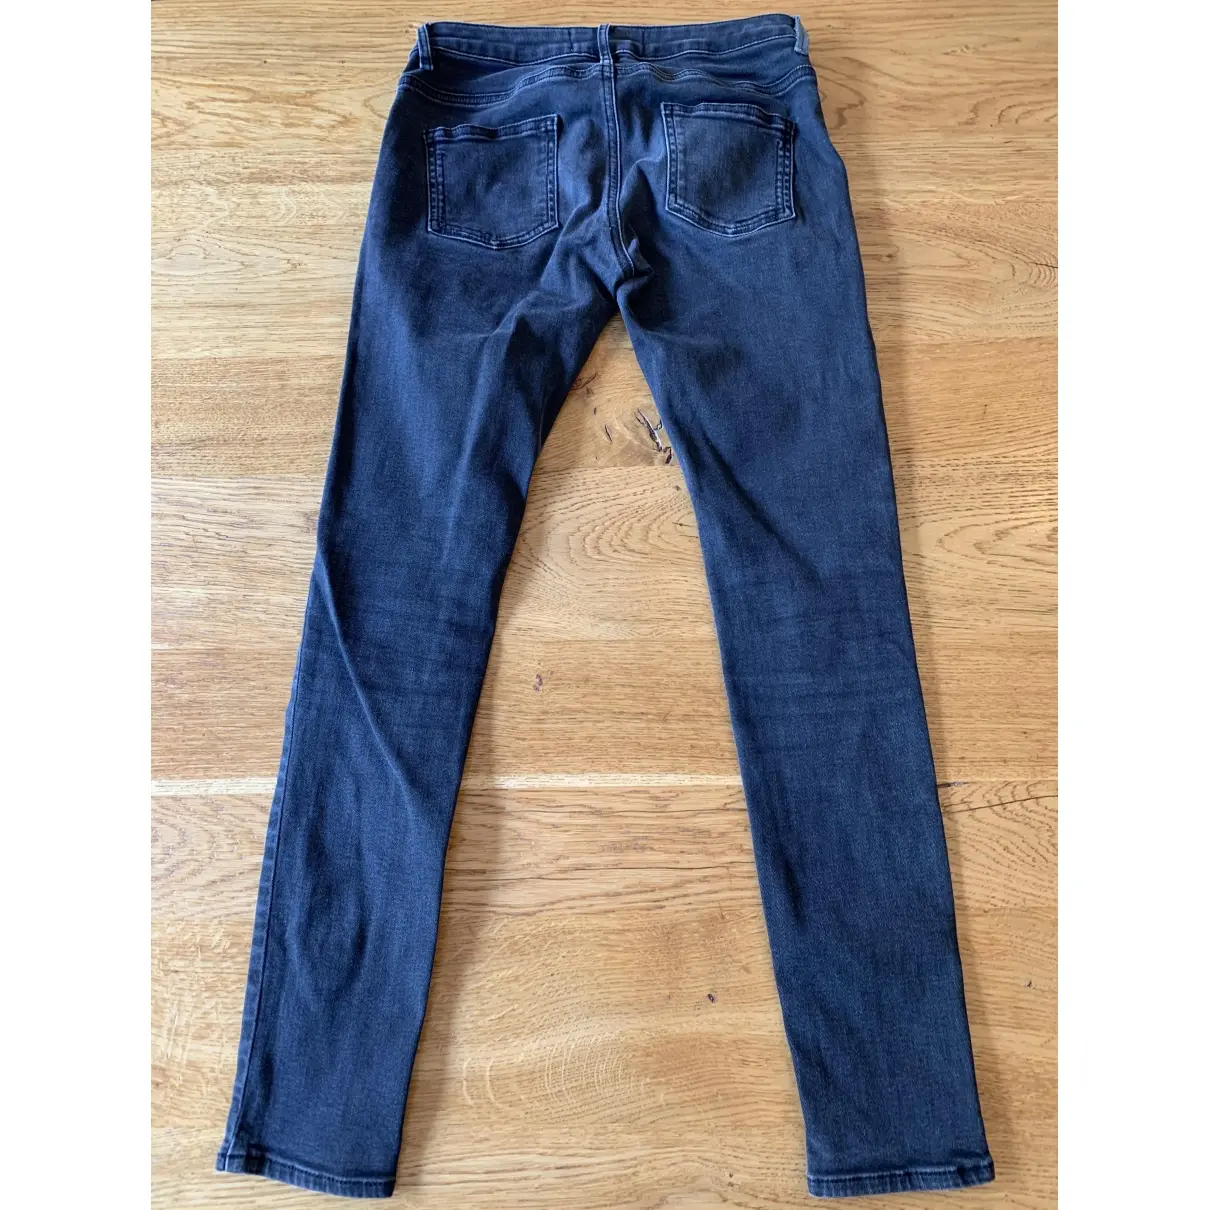 Buy Hironae Slim jeans online